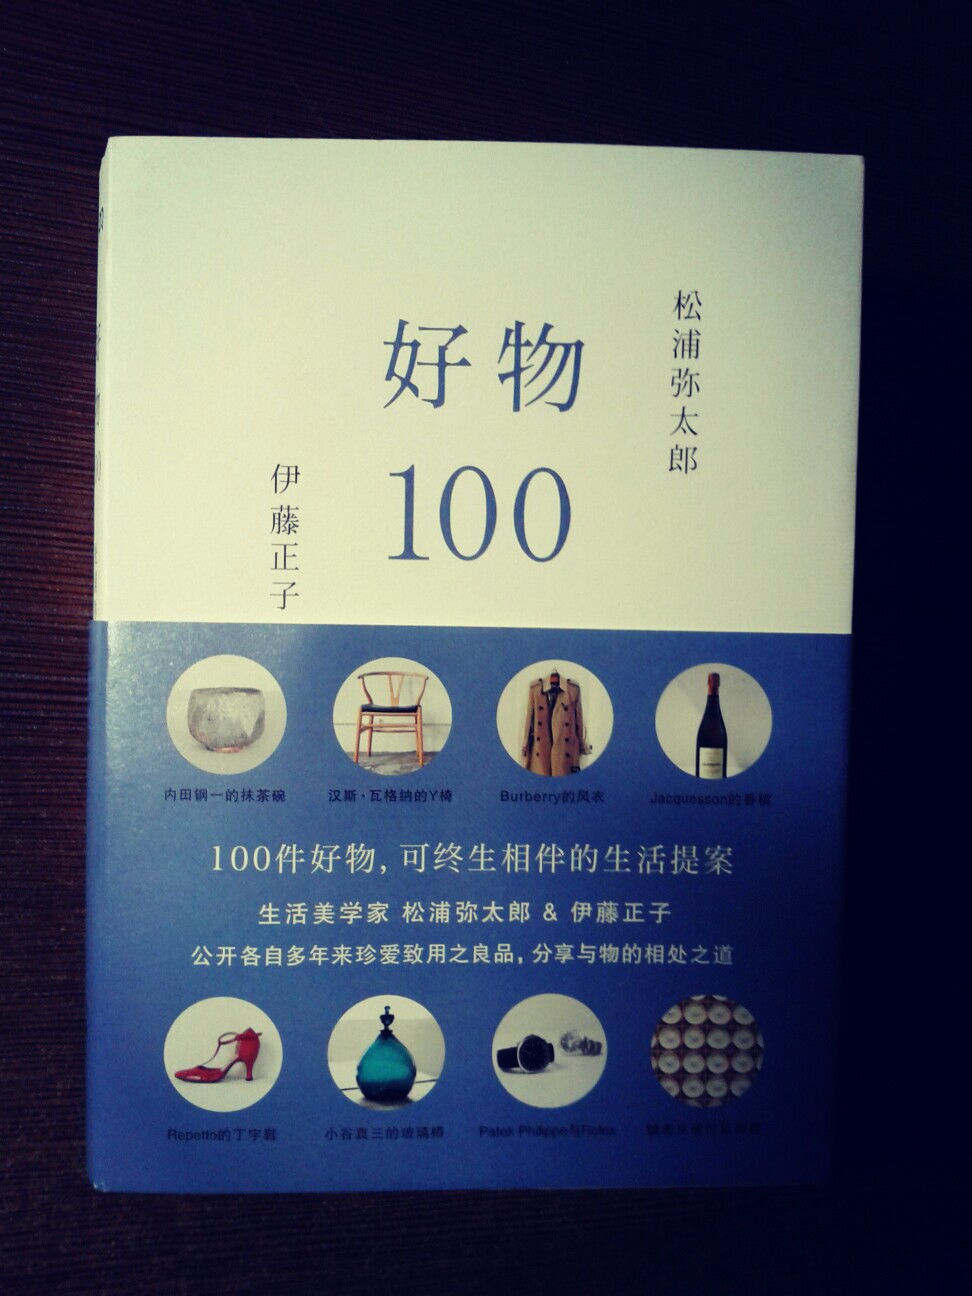 《好物100》一本快速提高生活品味的书,里面推荐了很多高品质的服装